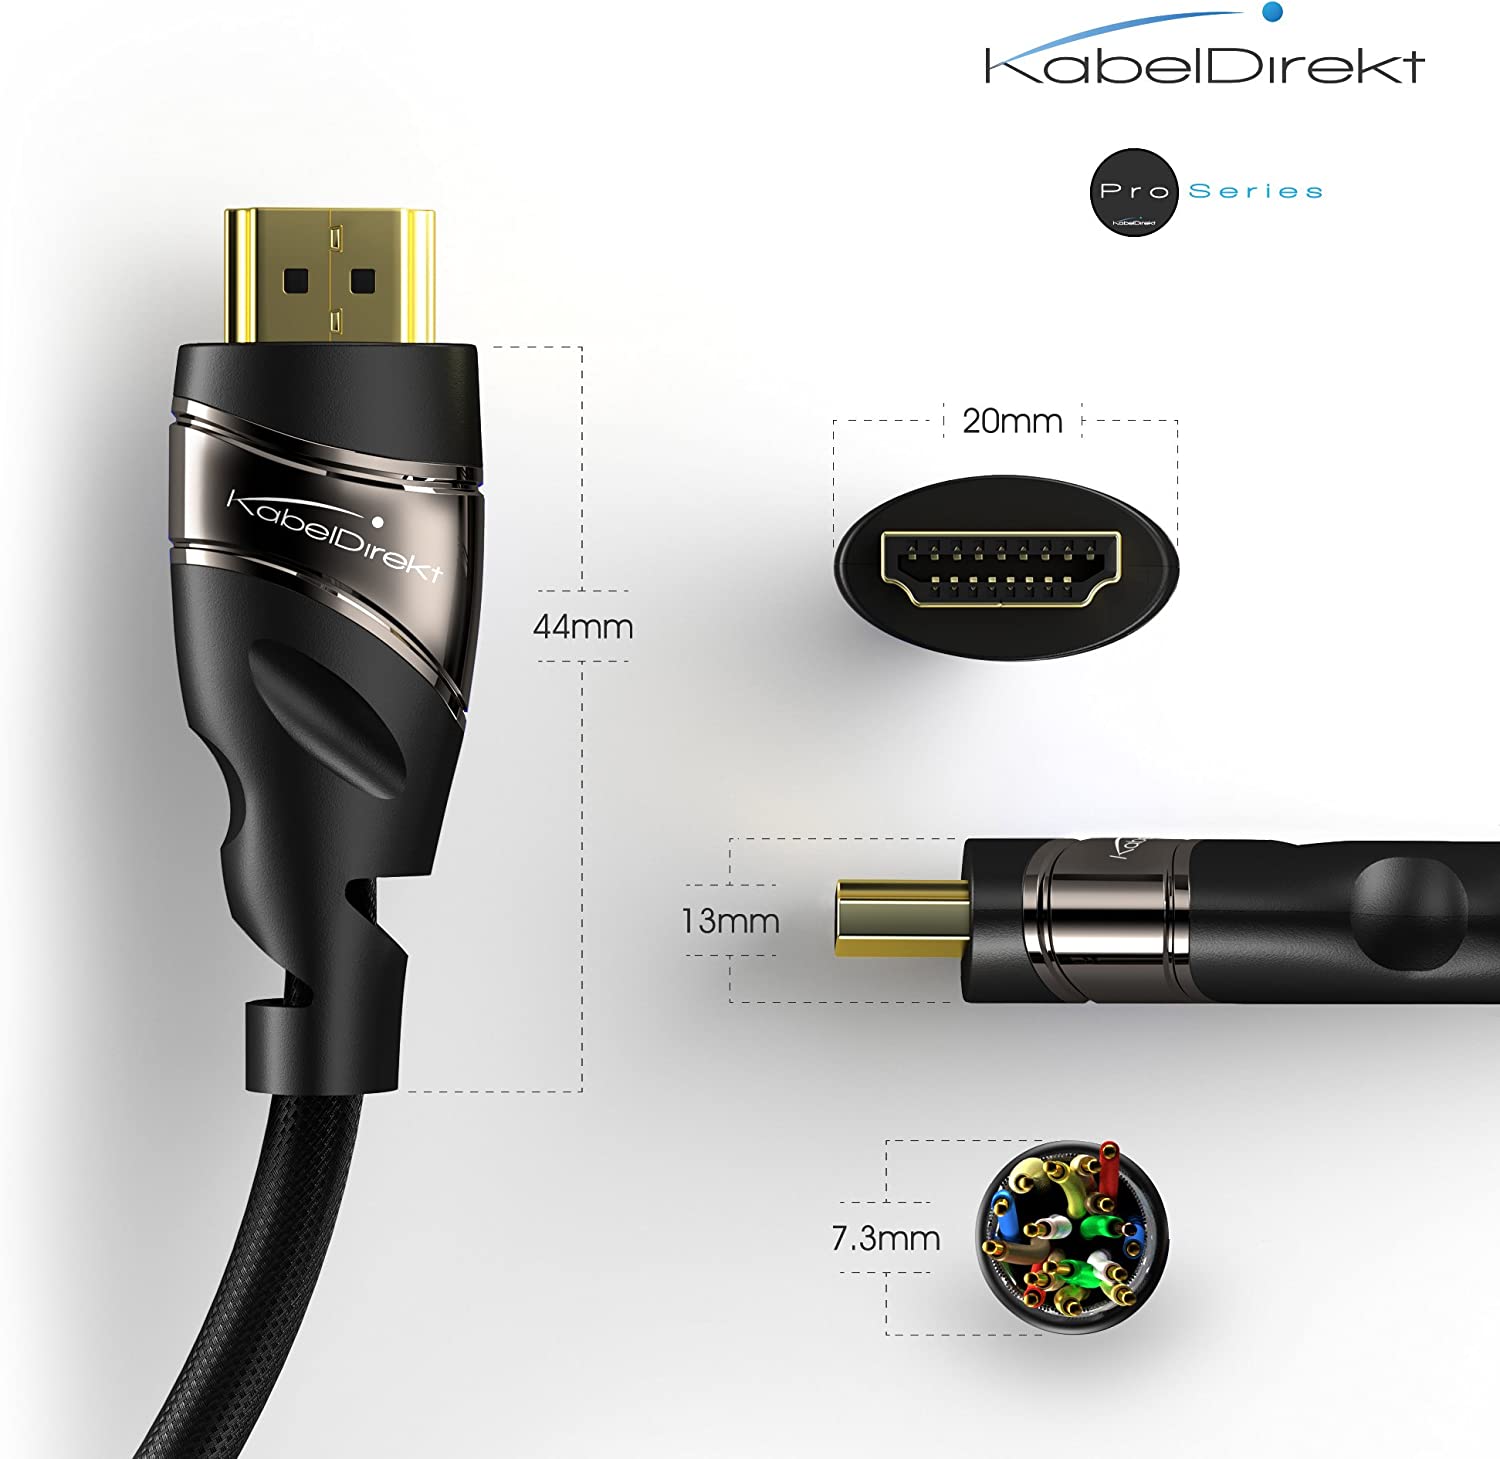 Cable HDMI de la serie KabelDirekt Pro